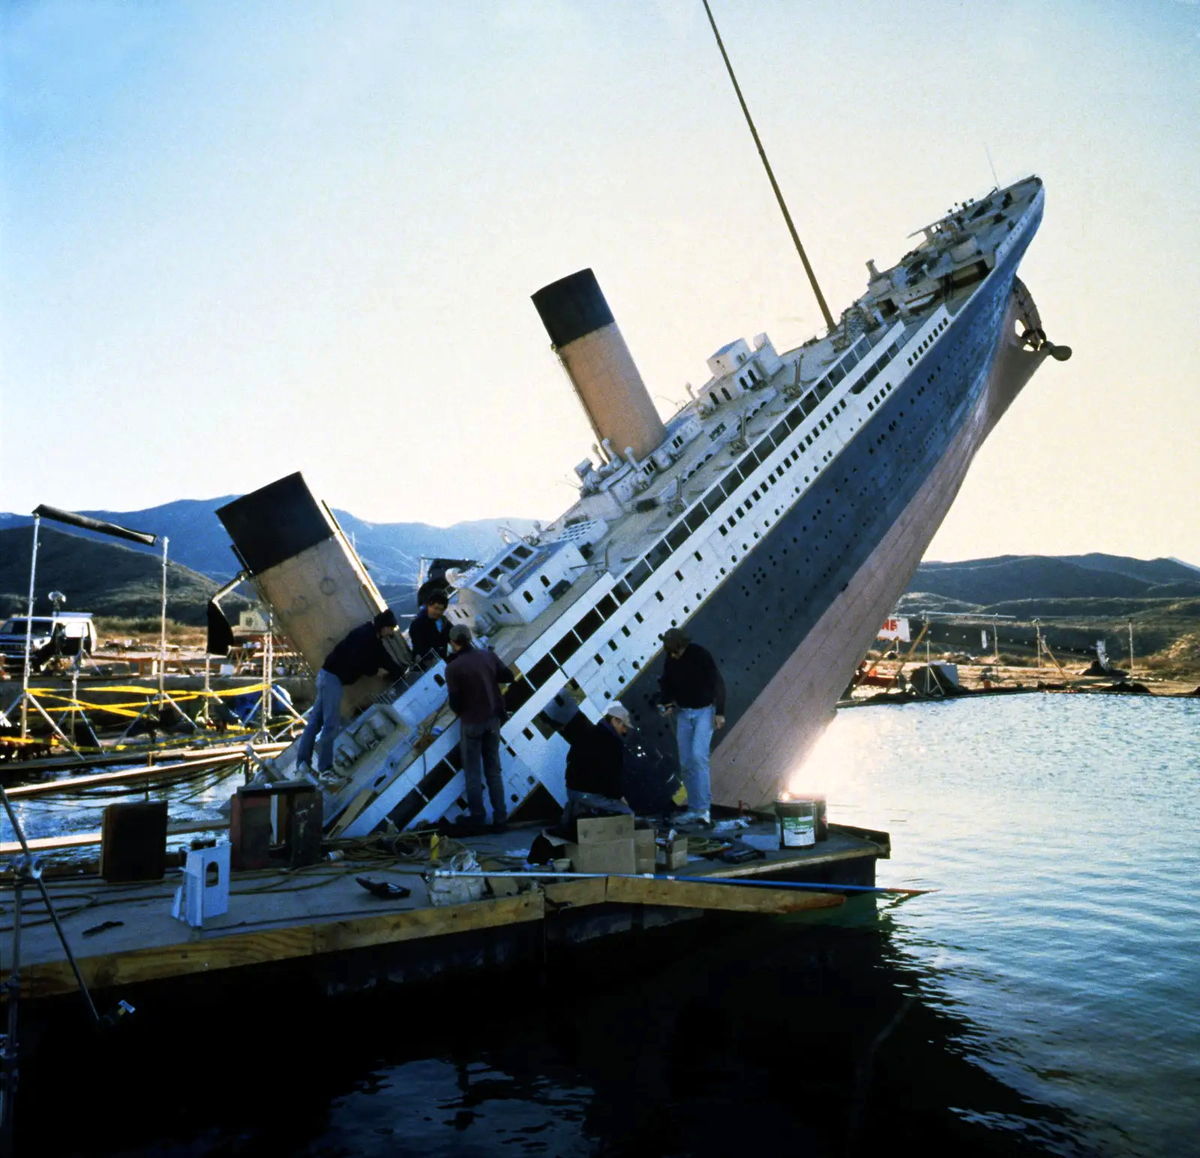 تصاویر دیده نشده از کشتی واقعی تایتانیک در زیر آب + فیلم